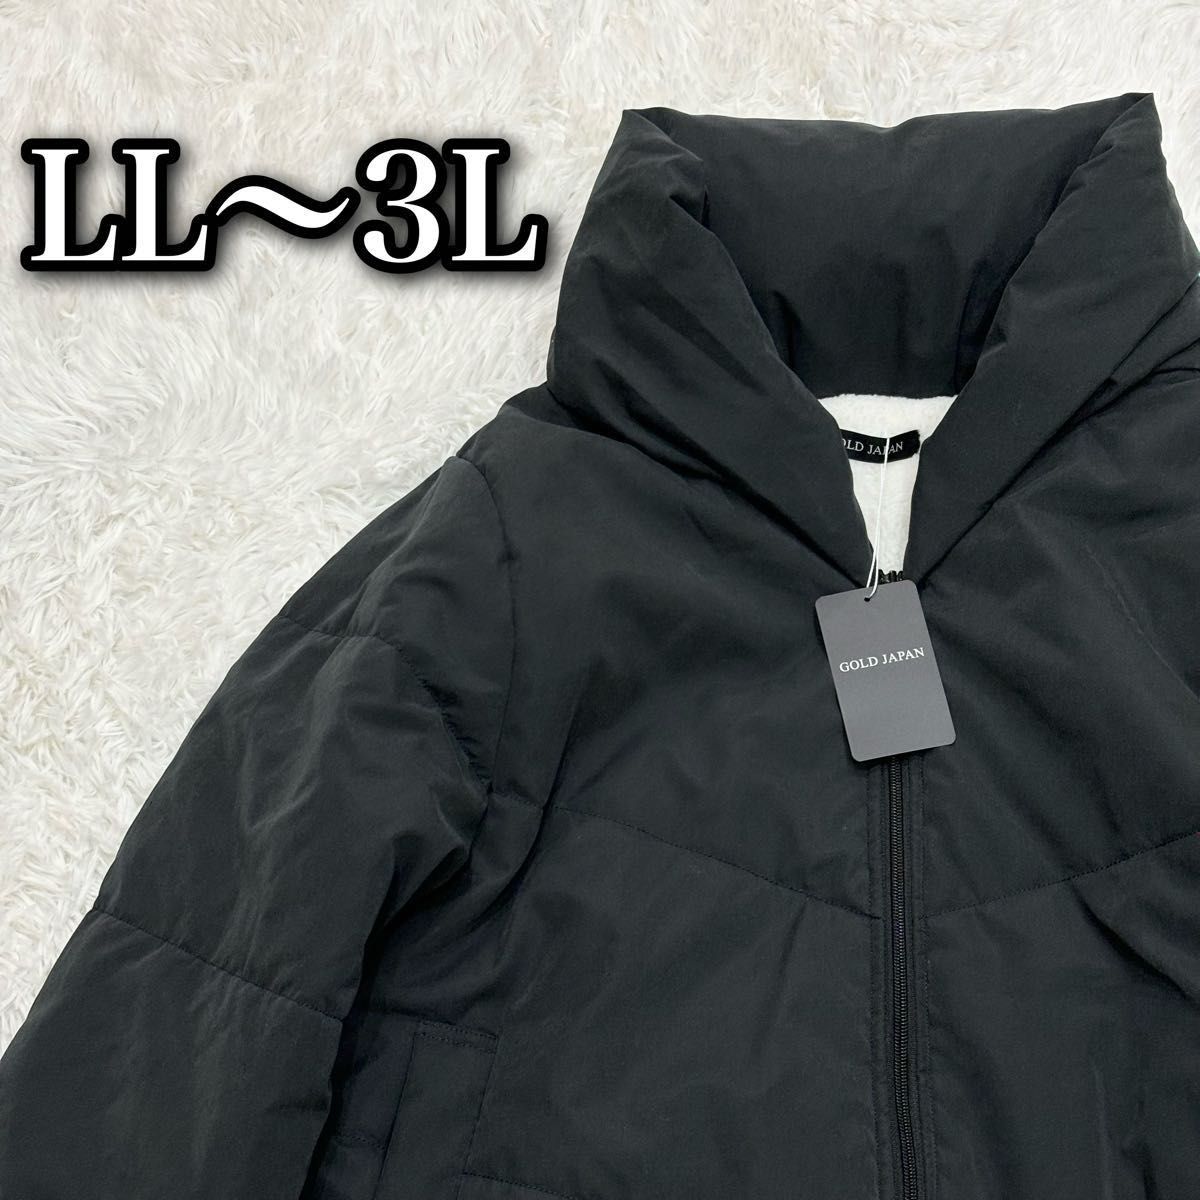 ゴールドジャパン ダウンコート ジャケット ロング丈 ブルゾン ブラック 中綿 黒 LL 3L ダウン アウター 大きいサイズ